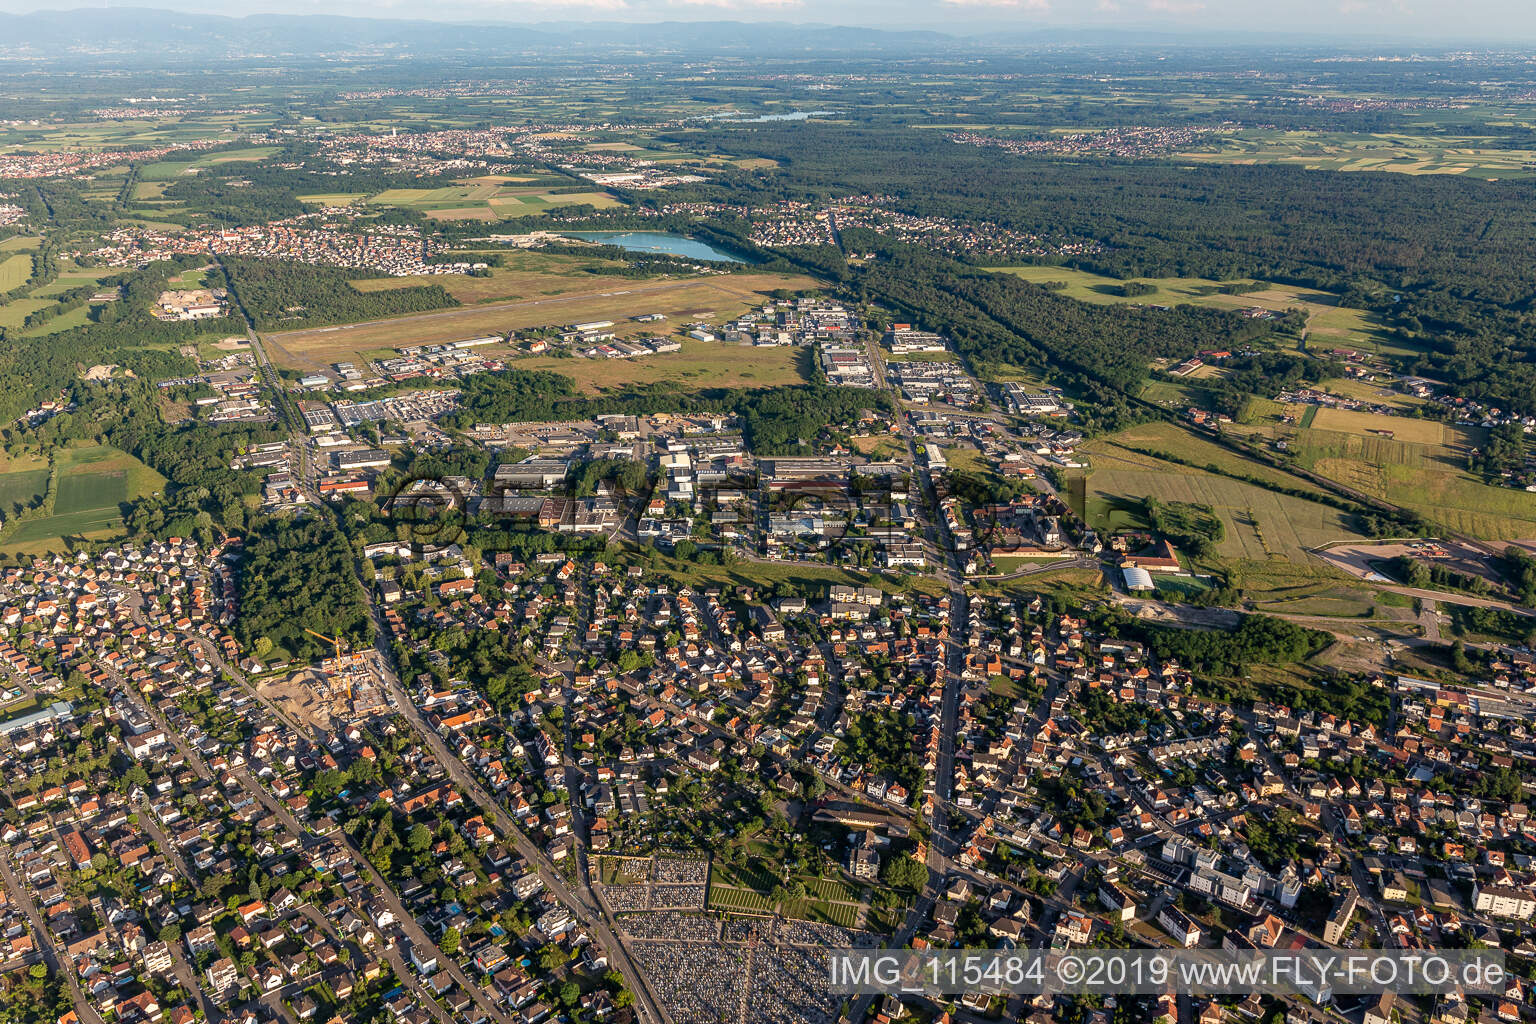 Haguenau im Bundesland Bas-Rhin, Frankreich aus der Luft betrachtet